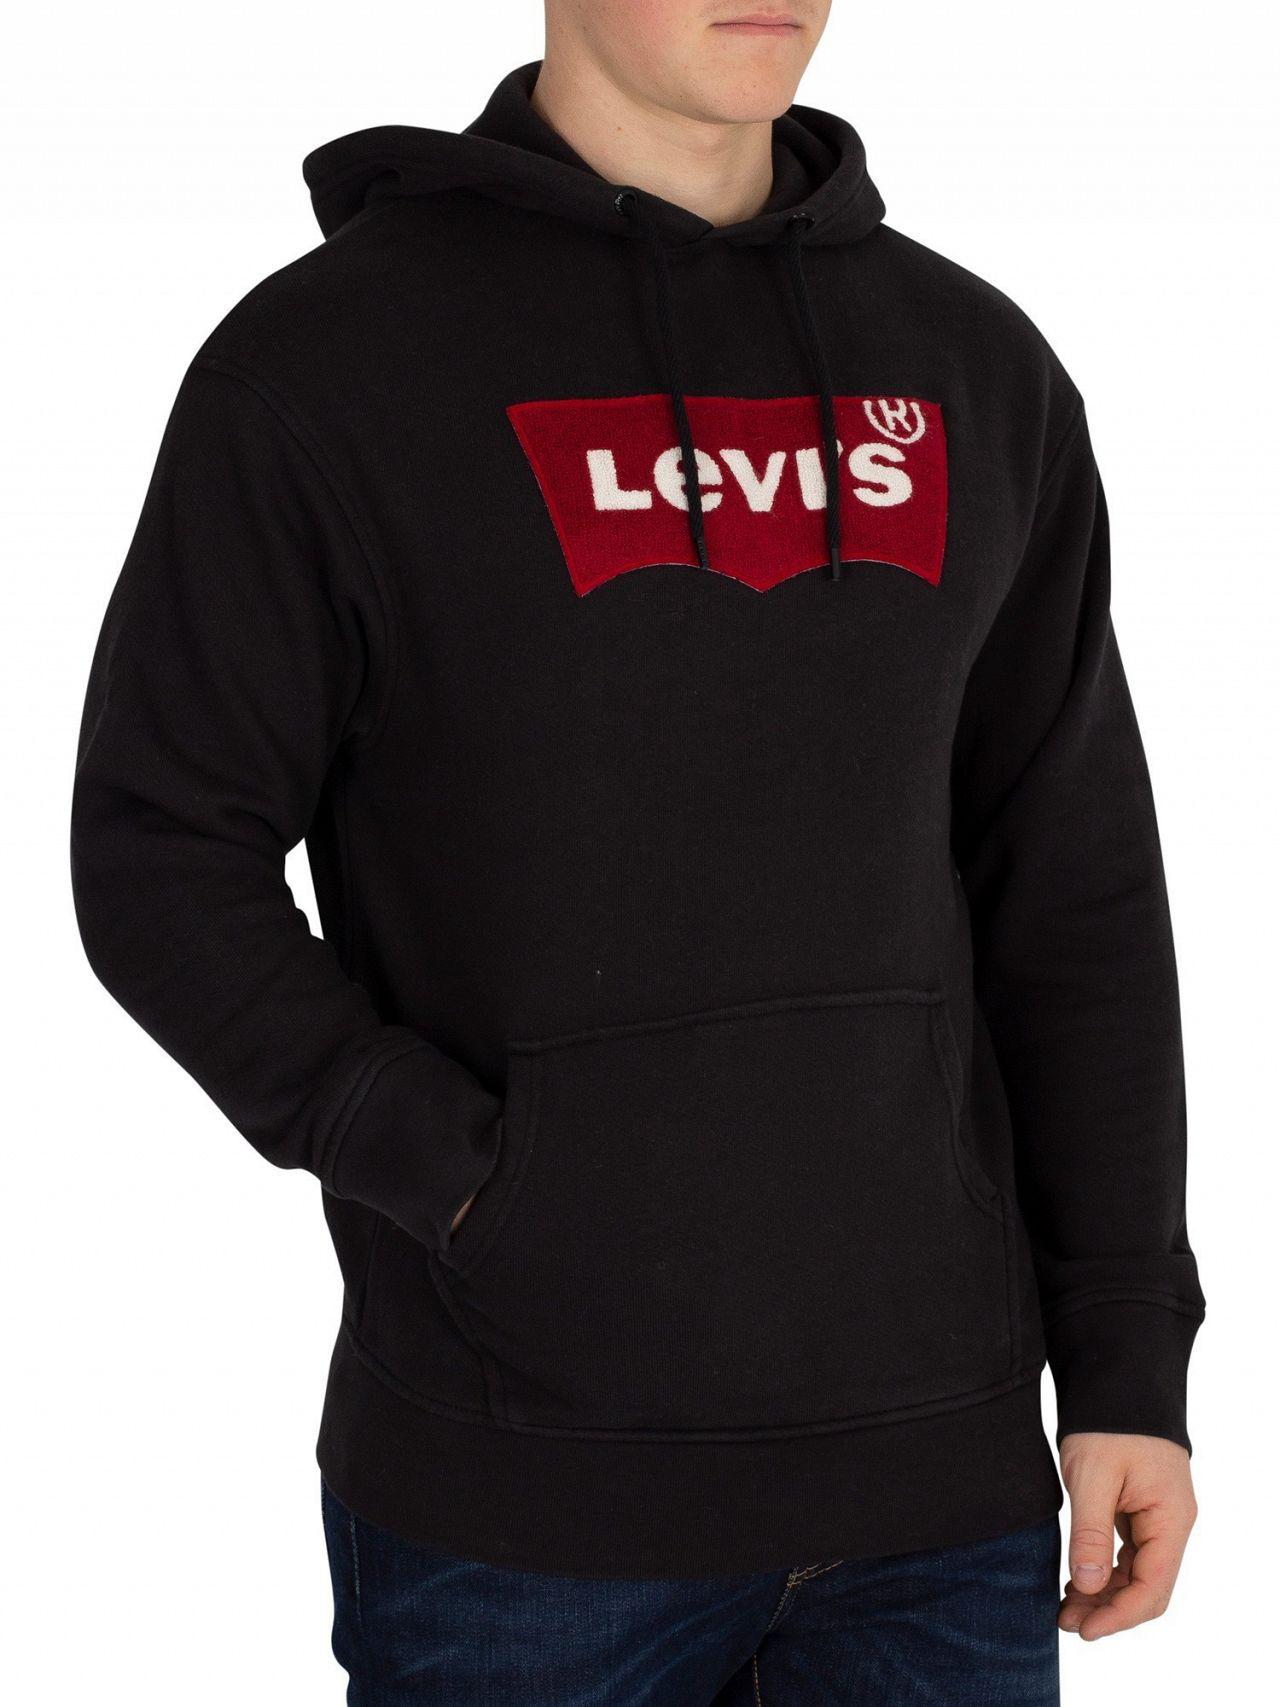 mens black levis hoodie